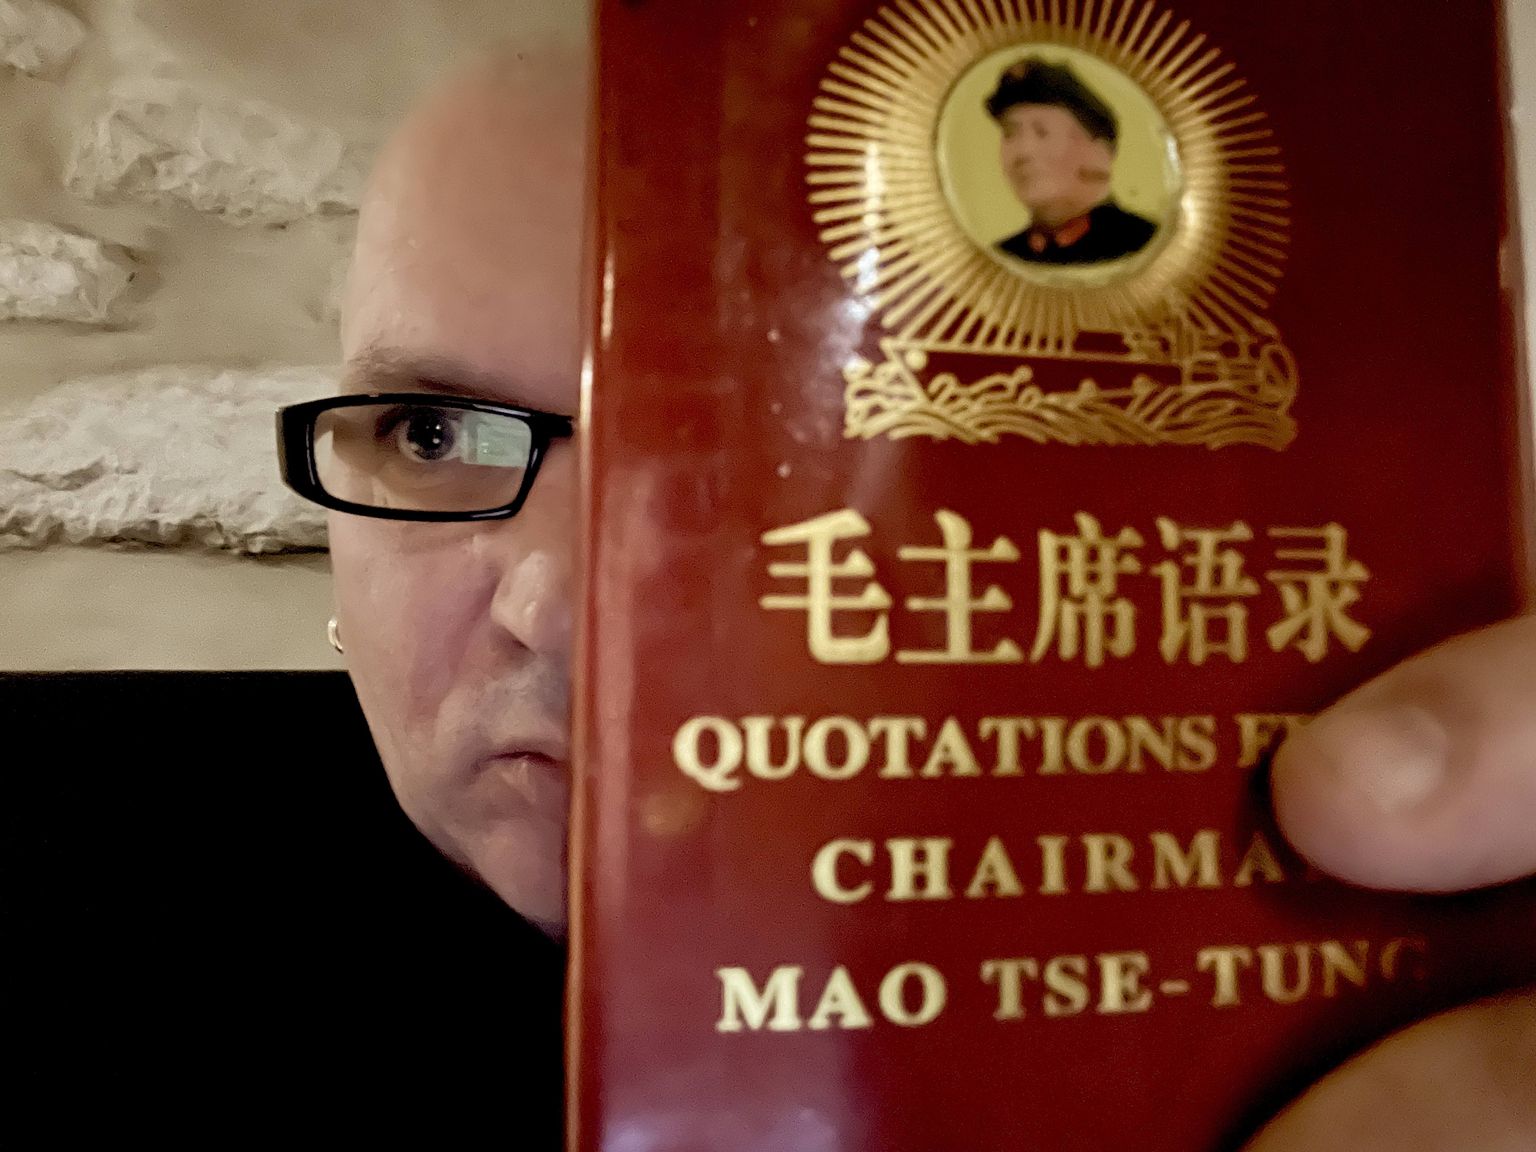 Mao inglise keelde tõlgitud "Punane raamat" loo autori käes